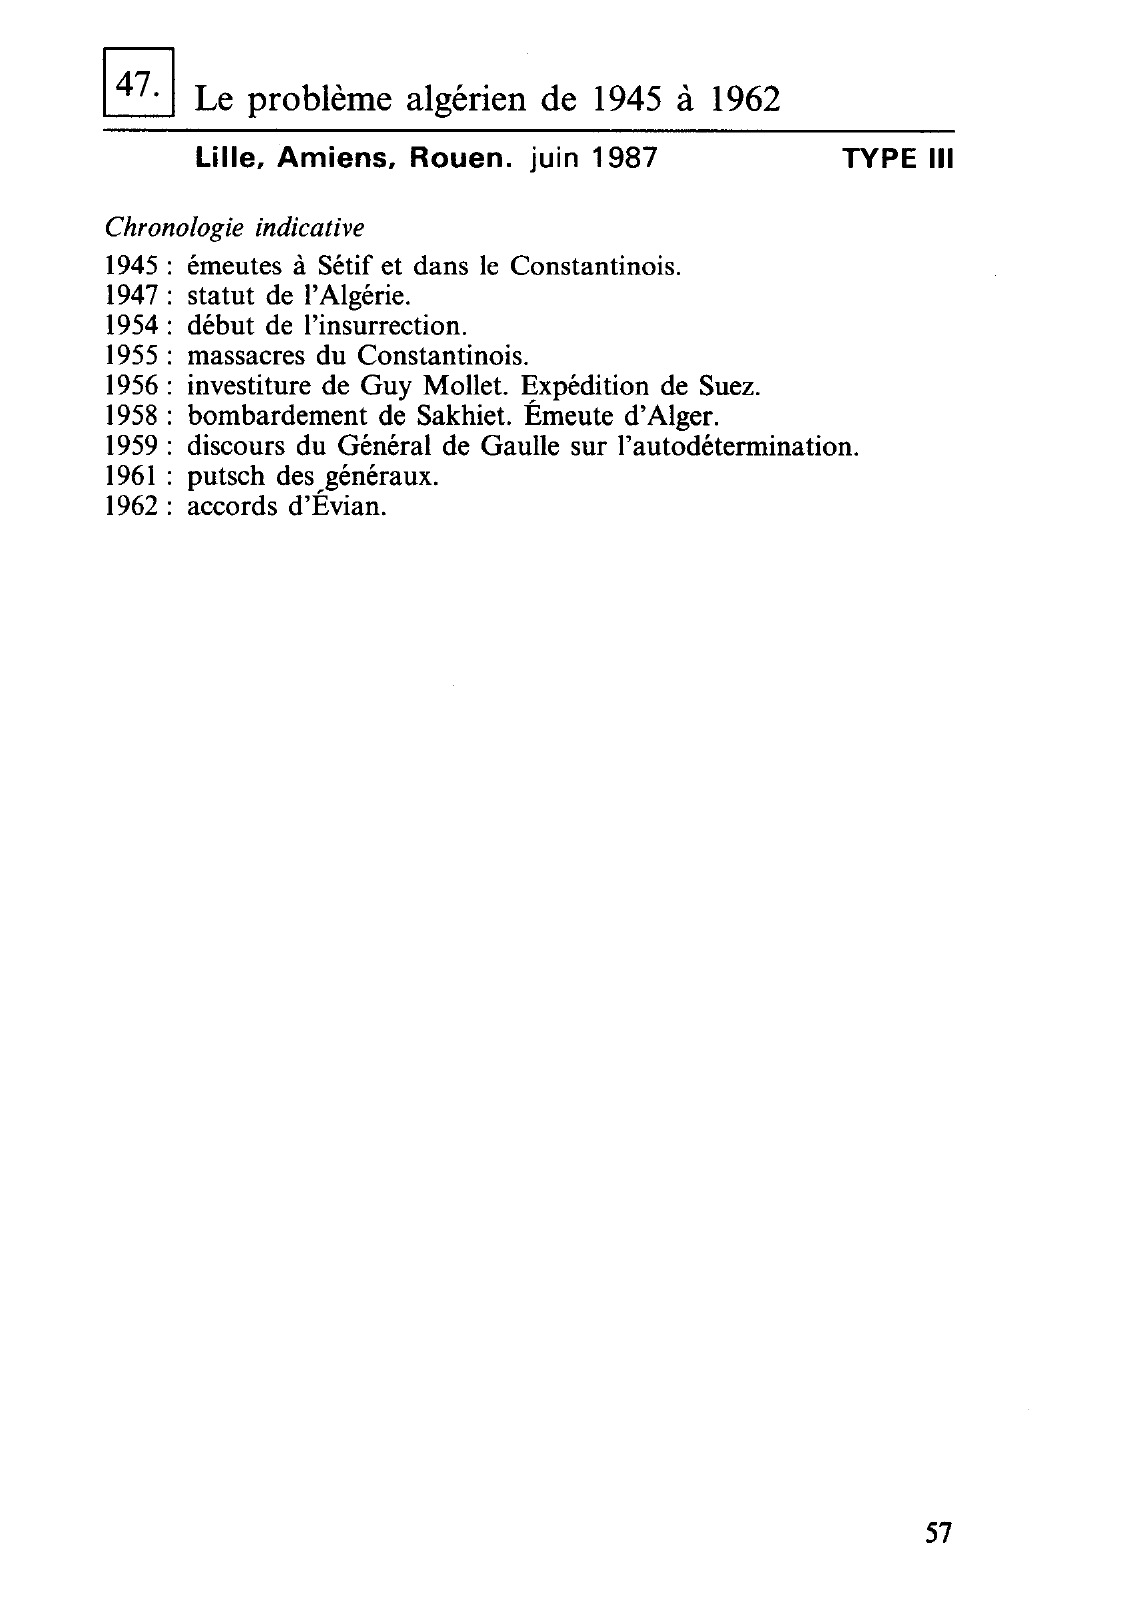 Prévisualisation du document ~

L'Indochine de 1940 à 1975
N ice, Corse.